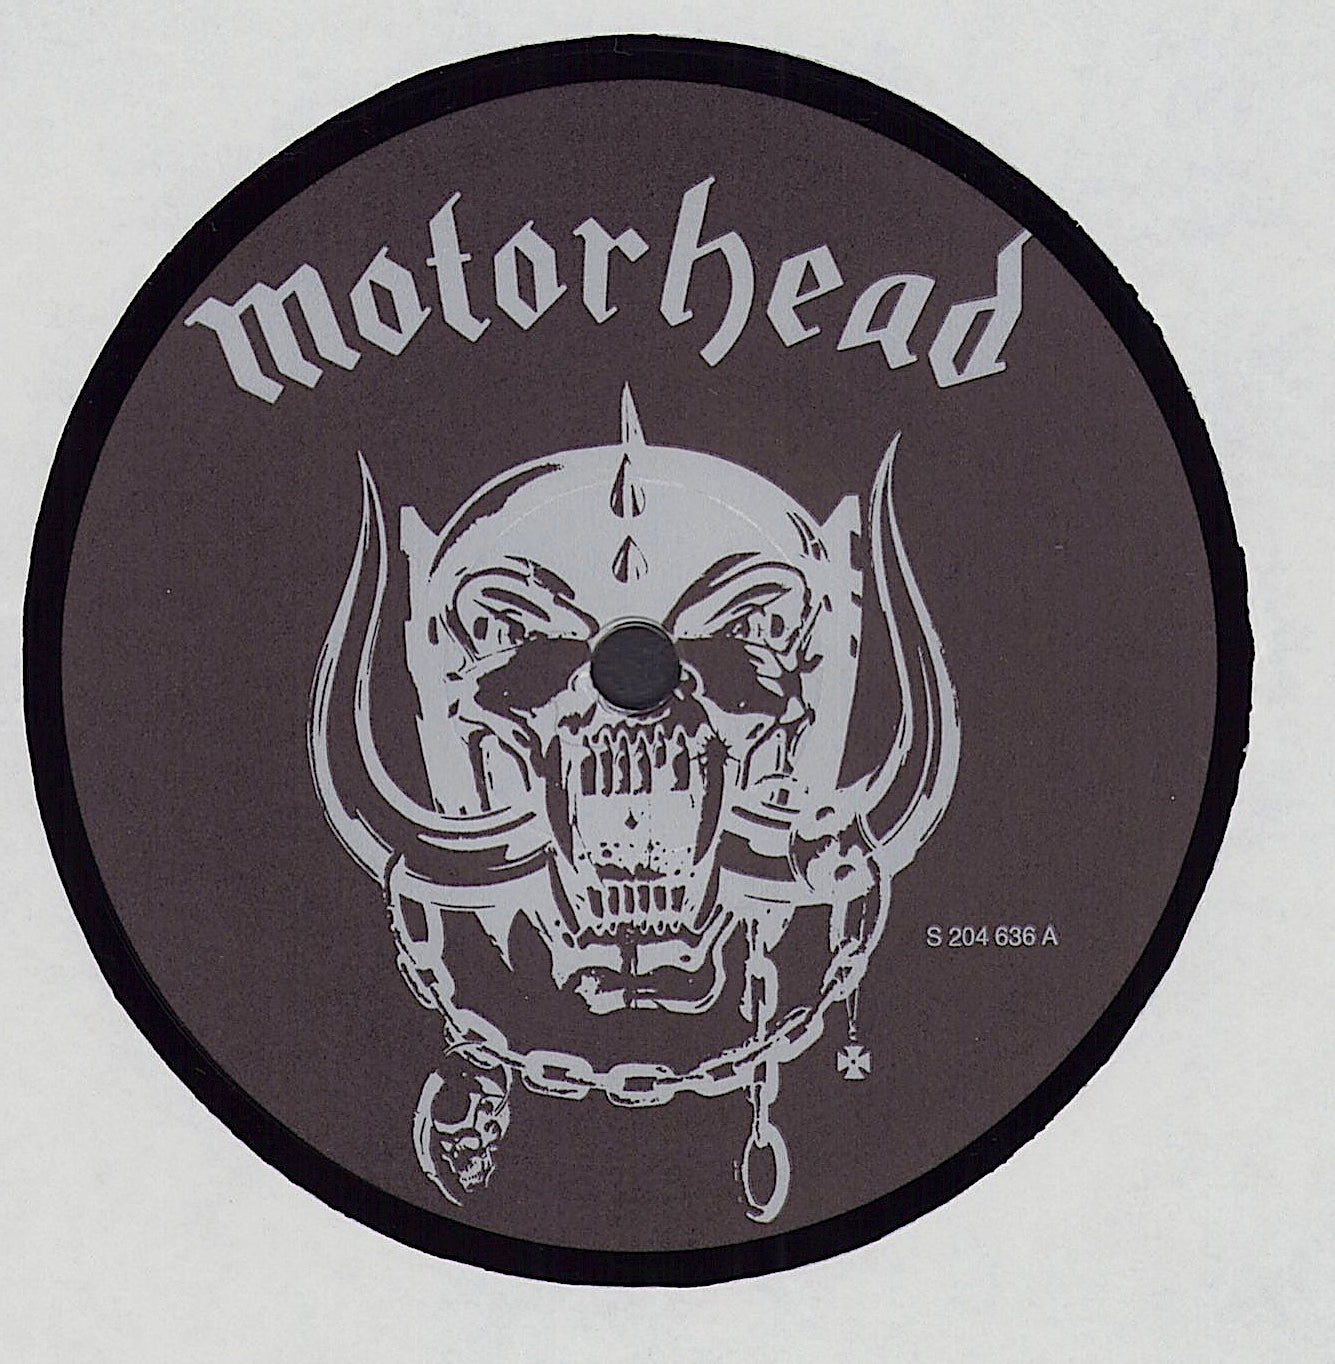 Motörhead ‎- Iron Fist Vinyl LP